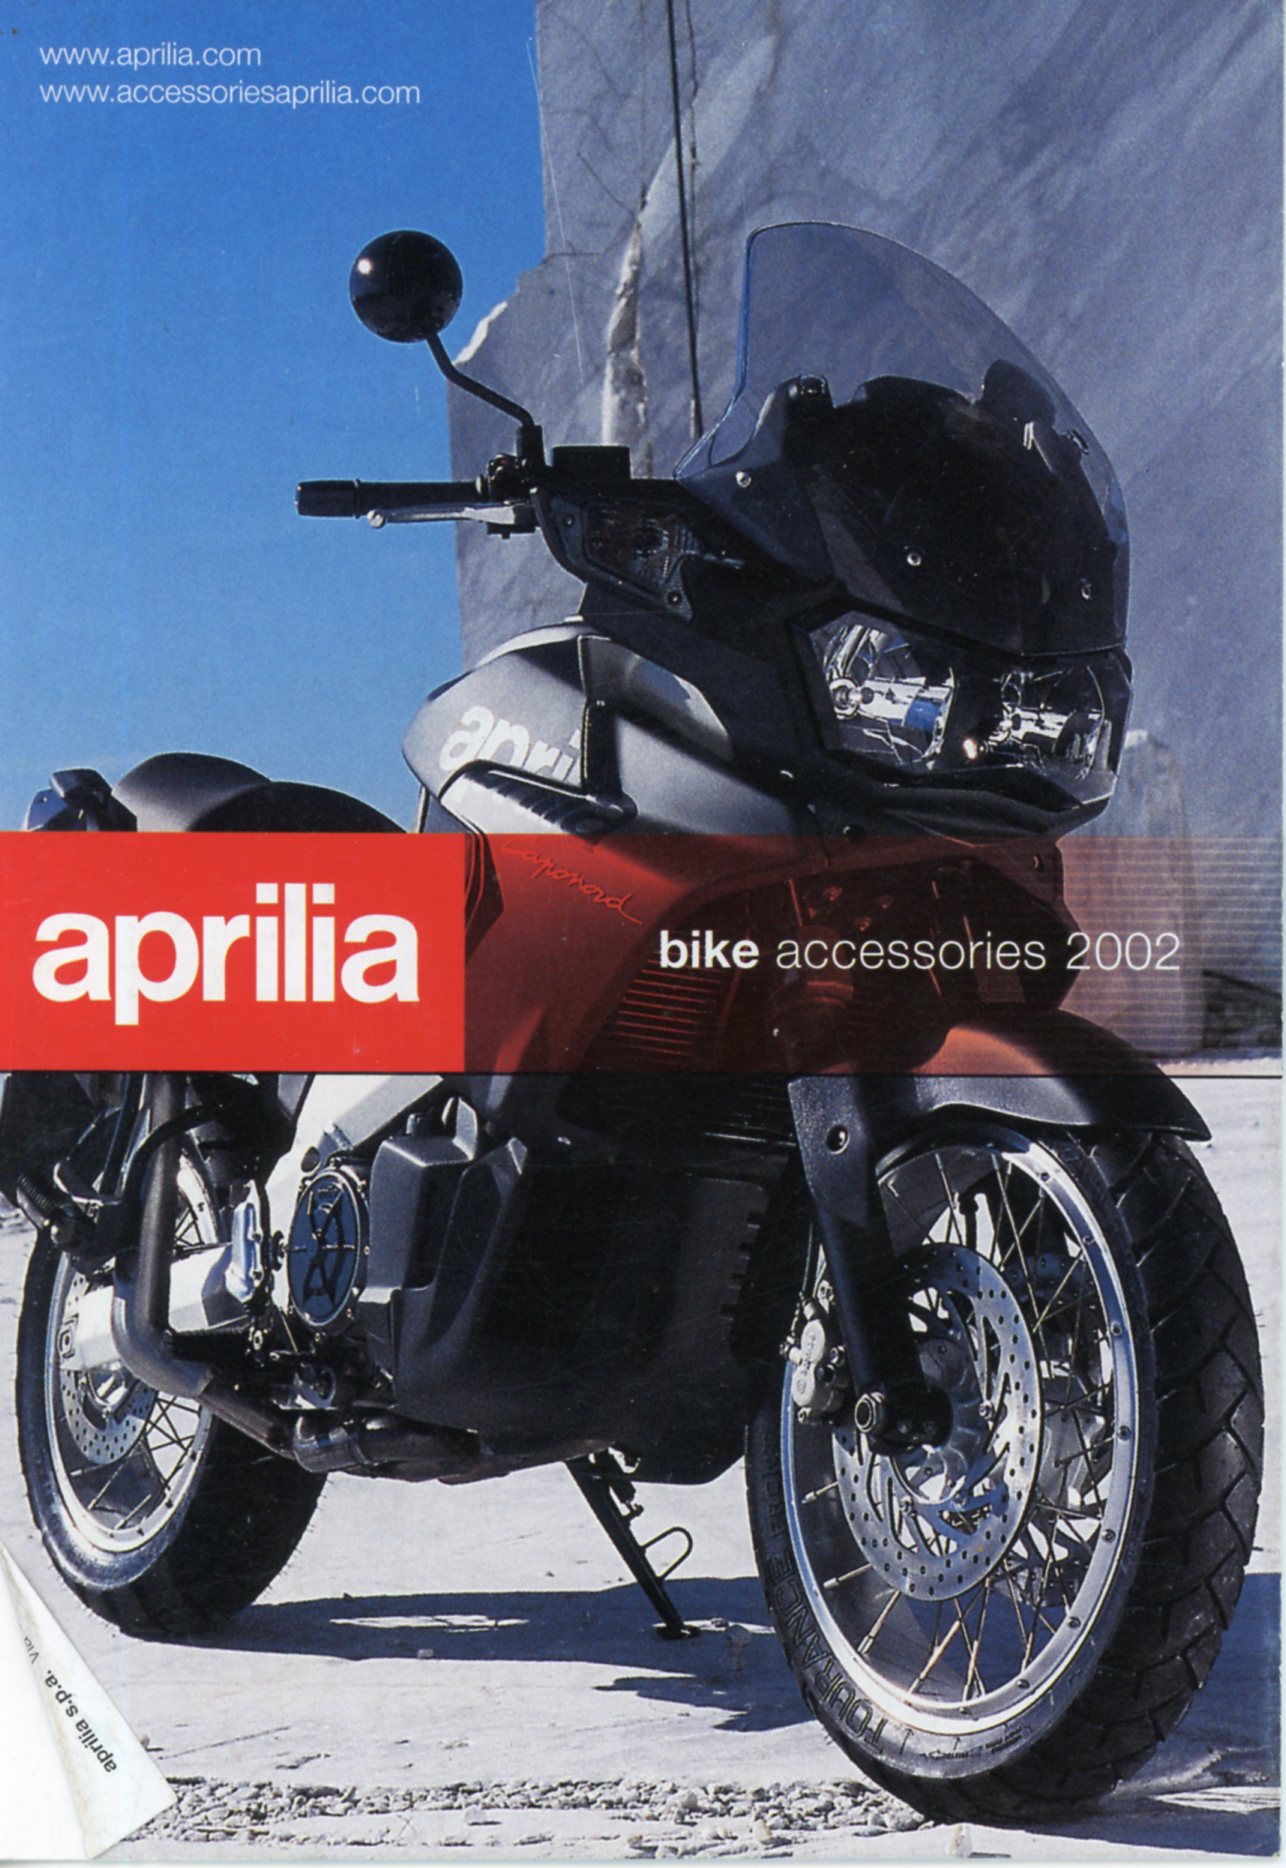 APRILIA ACCESSOIRES 2002 PEGASO MOTO 6.5 CLASSIC FUTURA CAPONORD FALCO RSV - BROCHURE MOTO